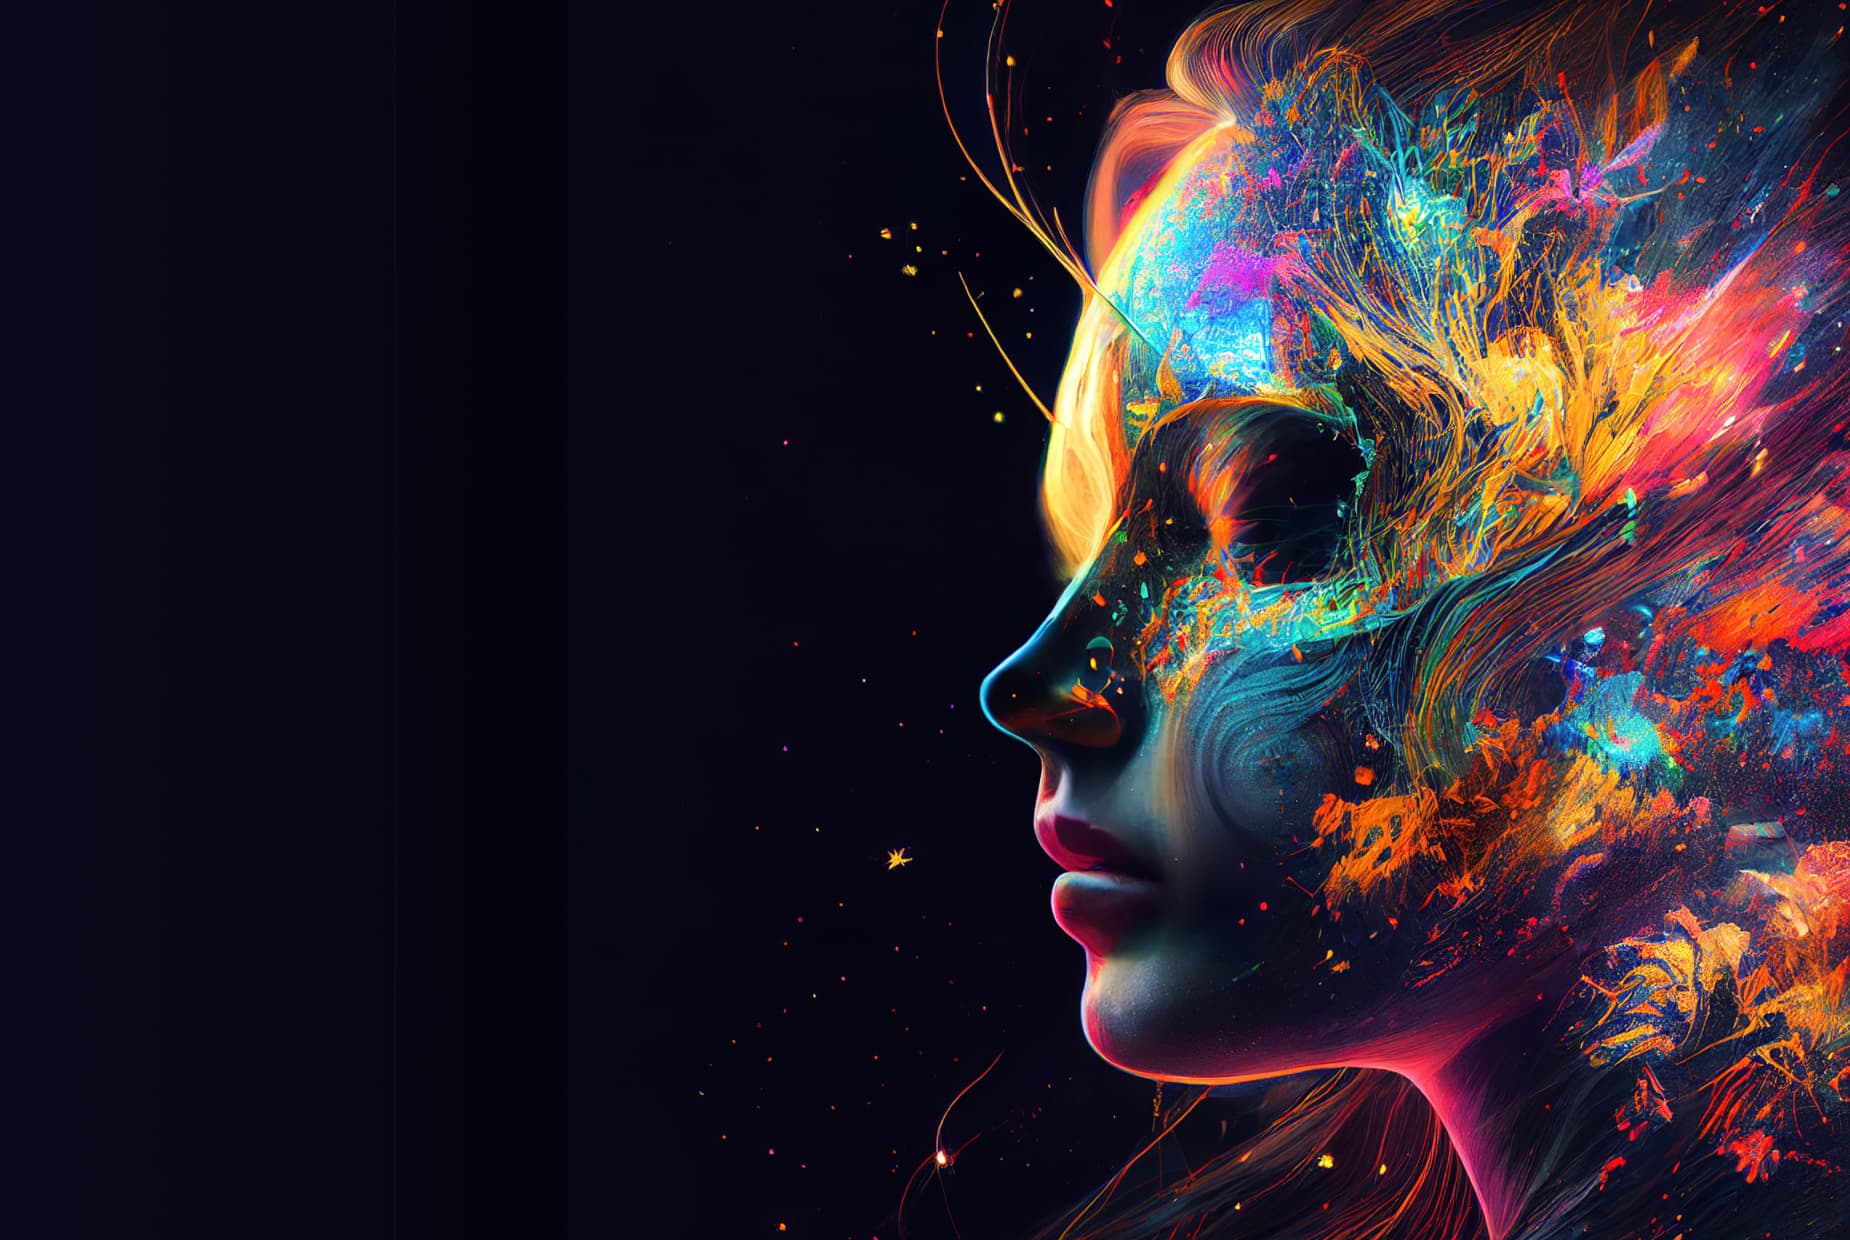 AI 生成的女性头部图像，包含色彩丰富的抽象艺术。